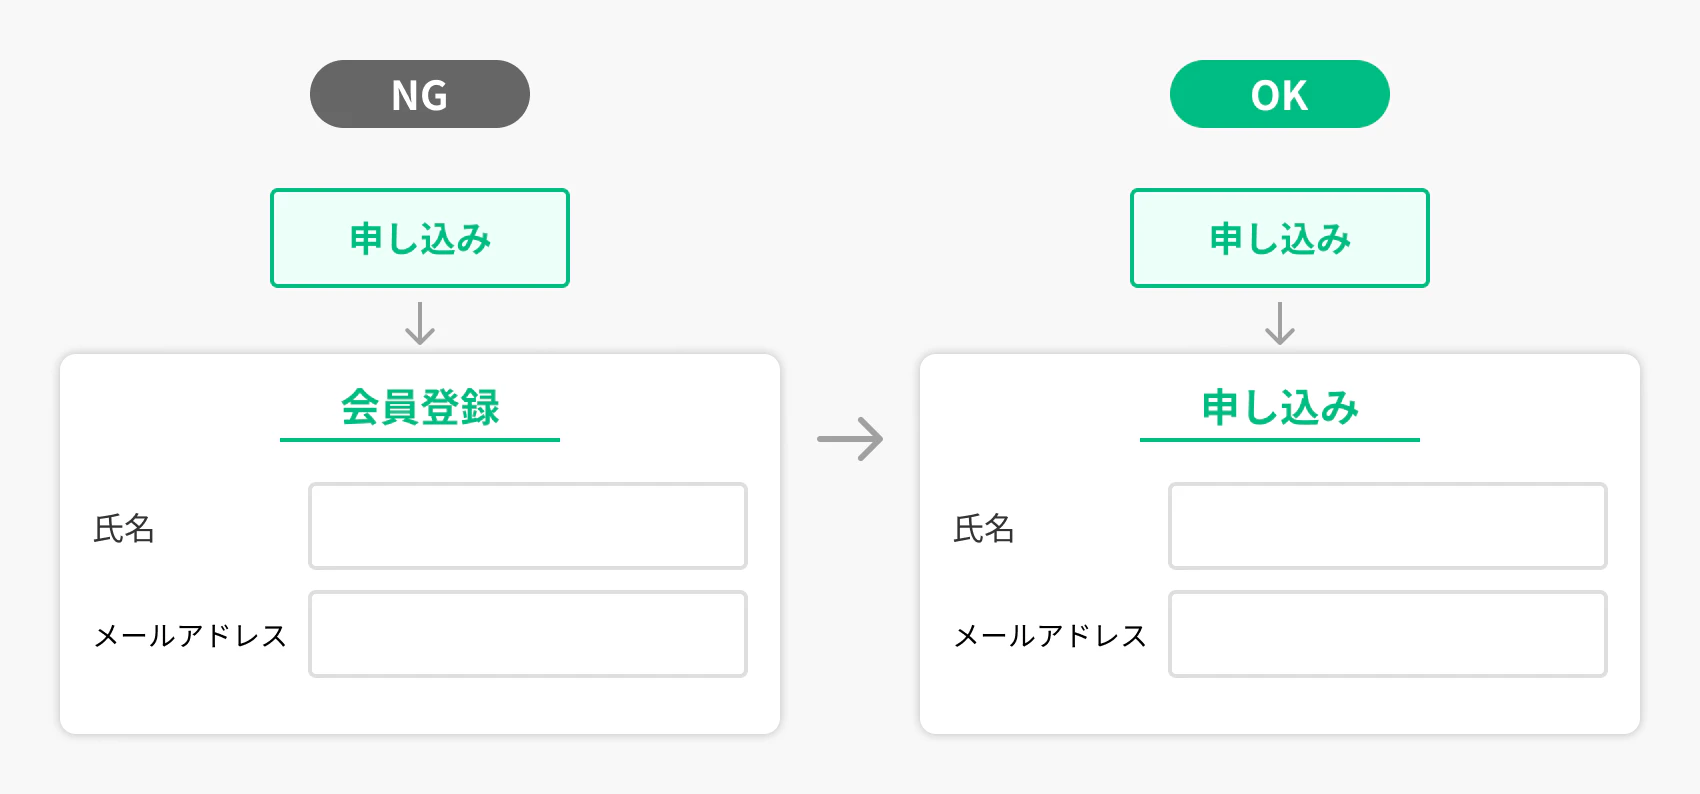 リンクを設定するボタンやテキストと、リンク先のタイトルは同じ文言にする例